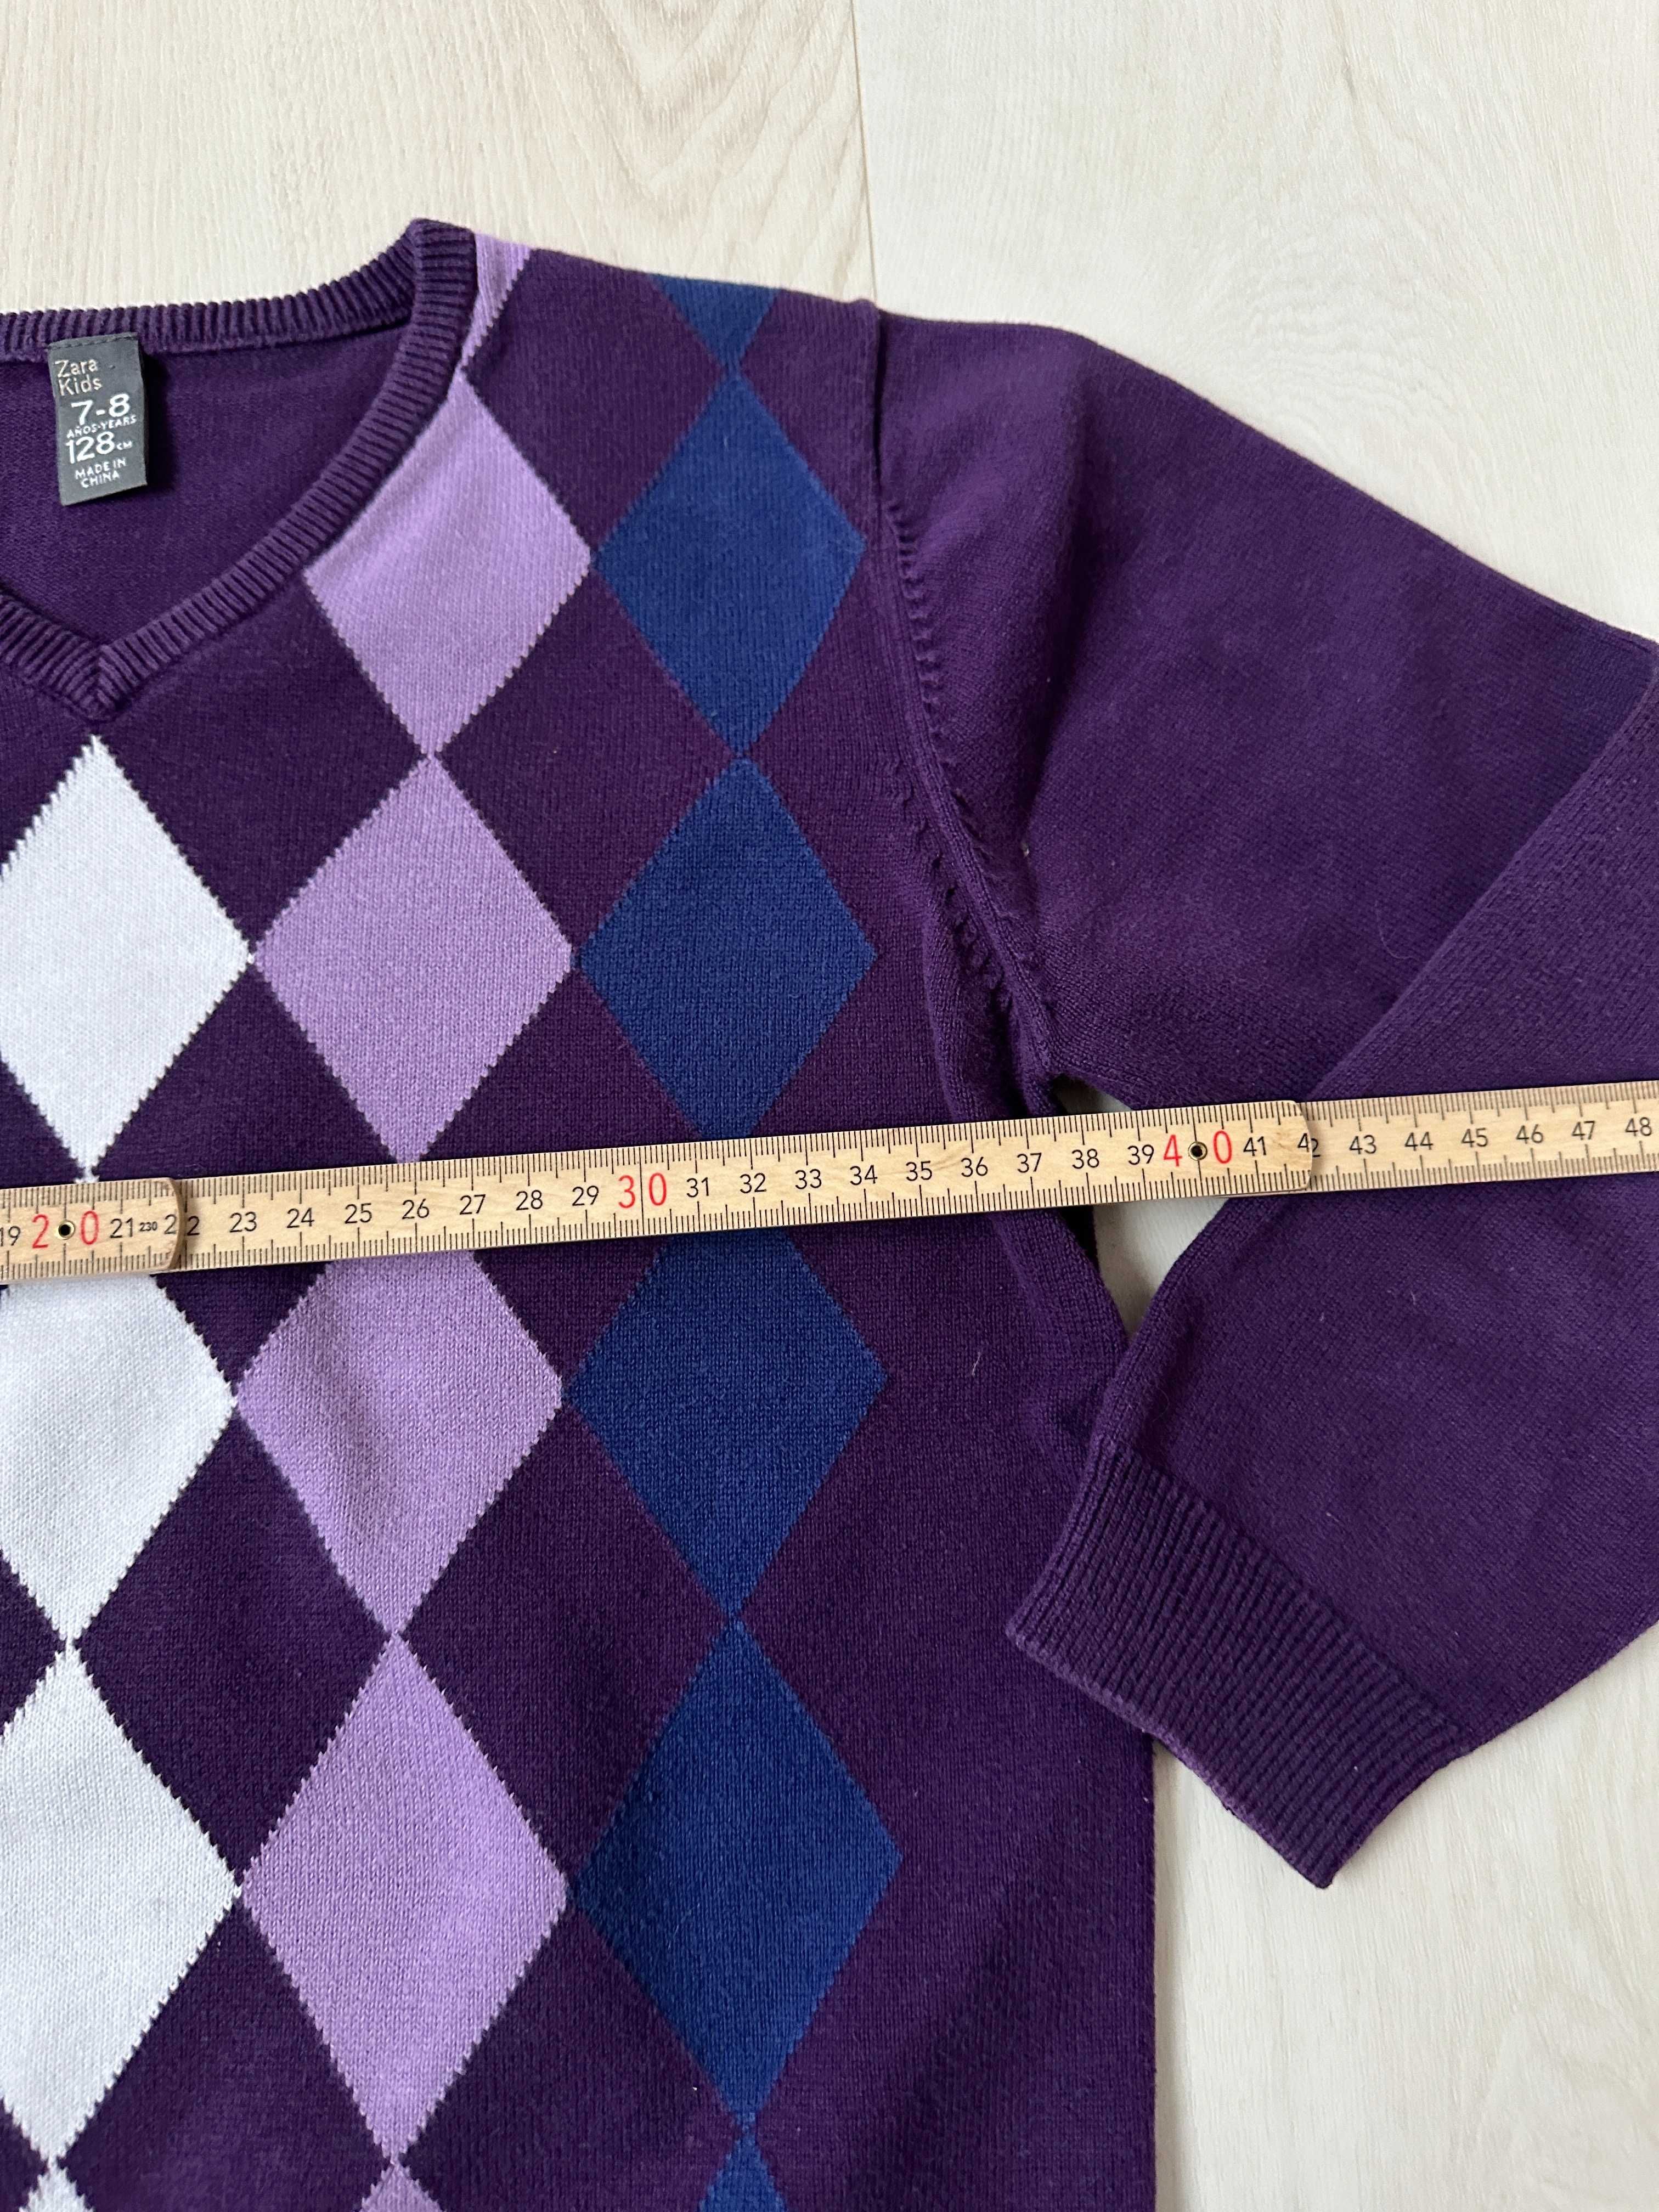 Zara  fiolet sweterek w romby  rozm 7-8 128 lat  stan idealny